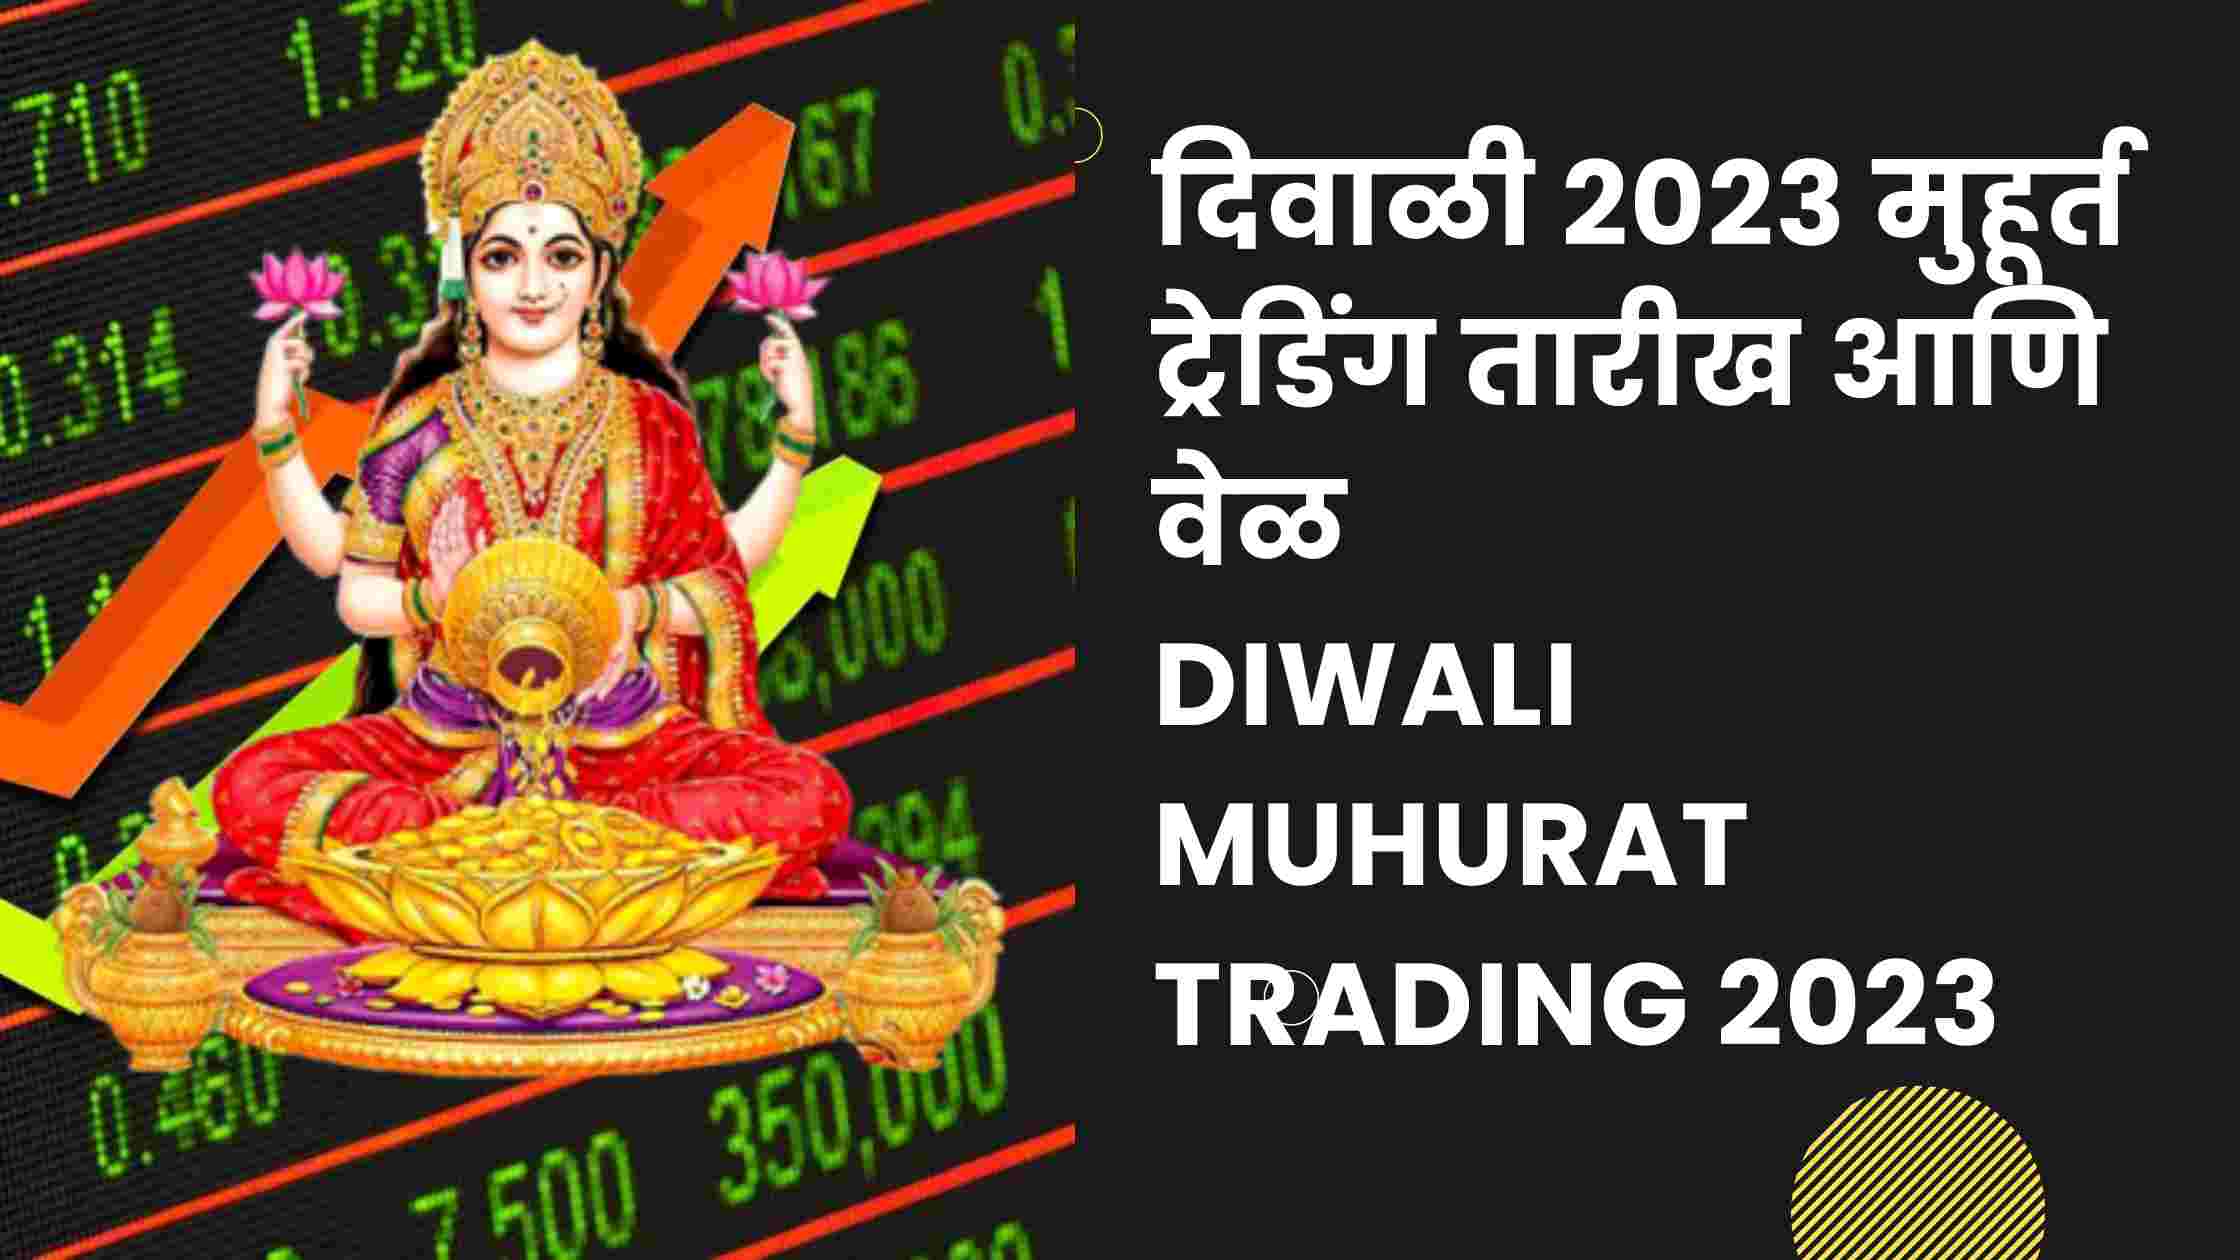 दिवाळी 2023 मुहूर्त ट्रेडिंग तारीख आणि वेळ Diwali Muhurat Trading 2023